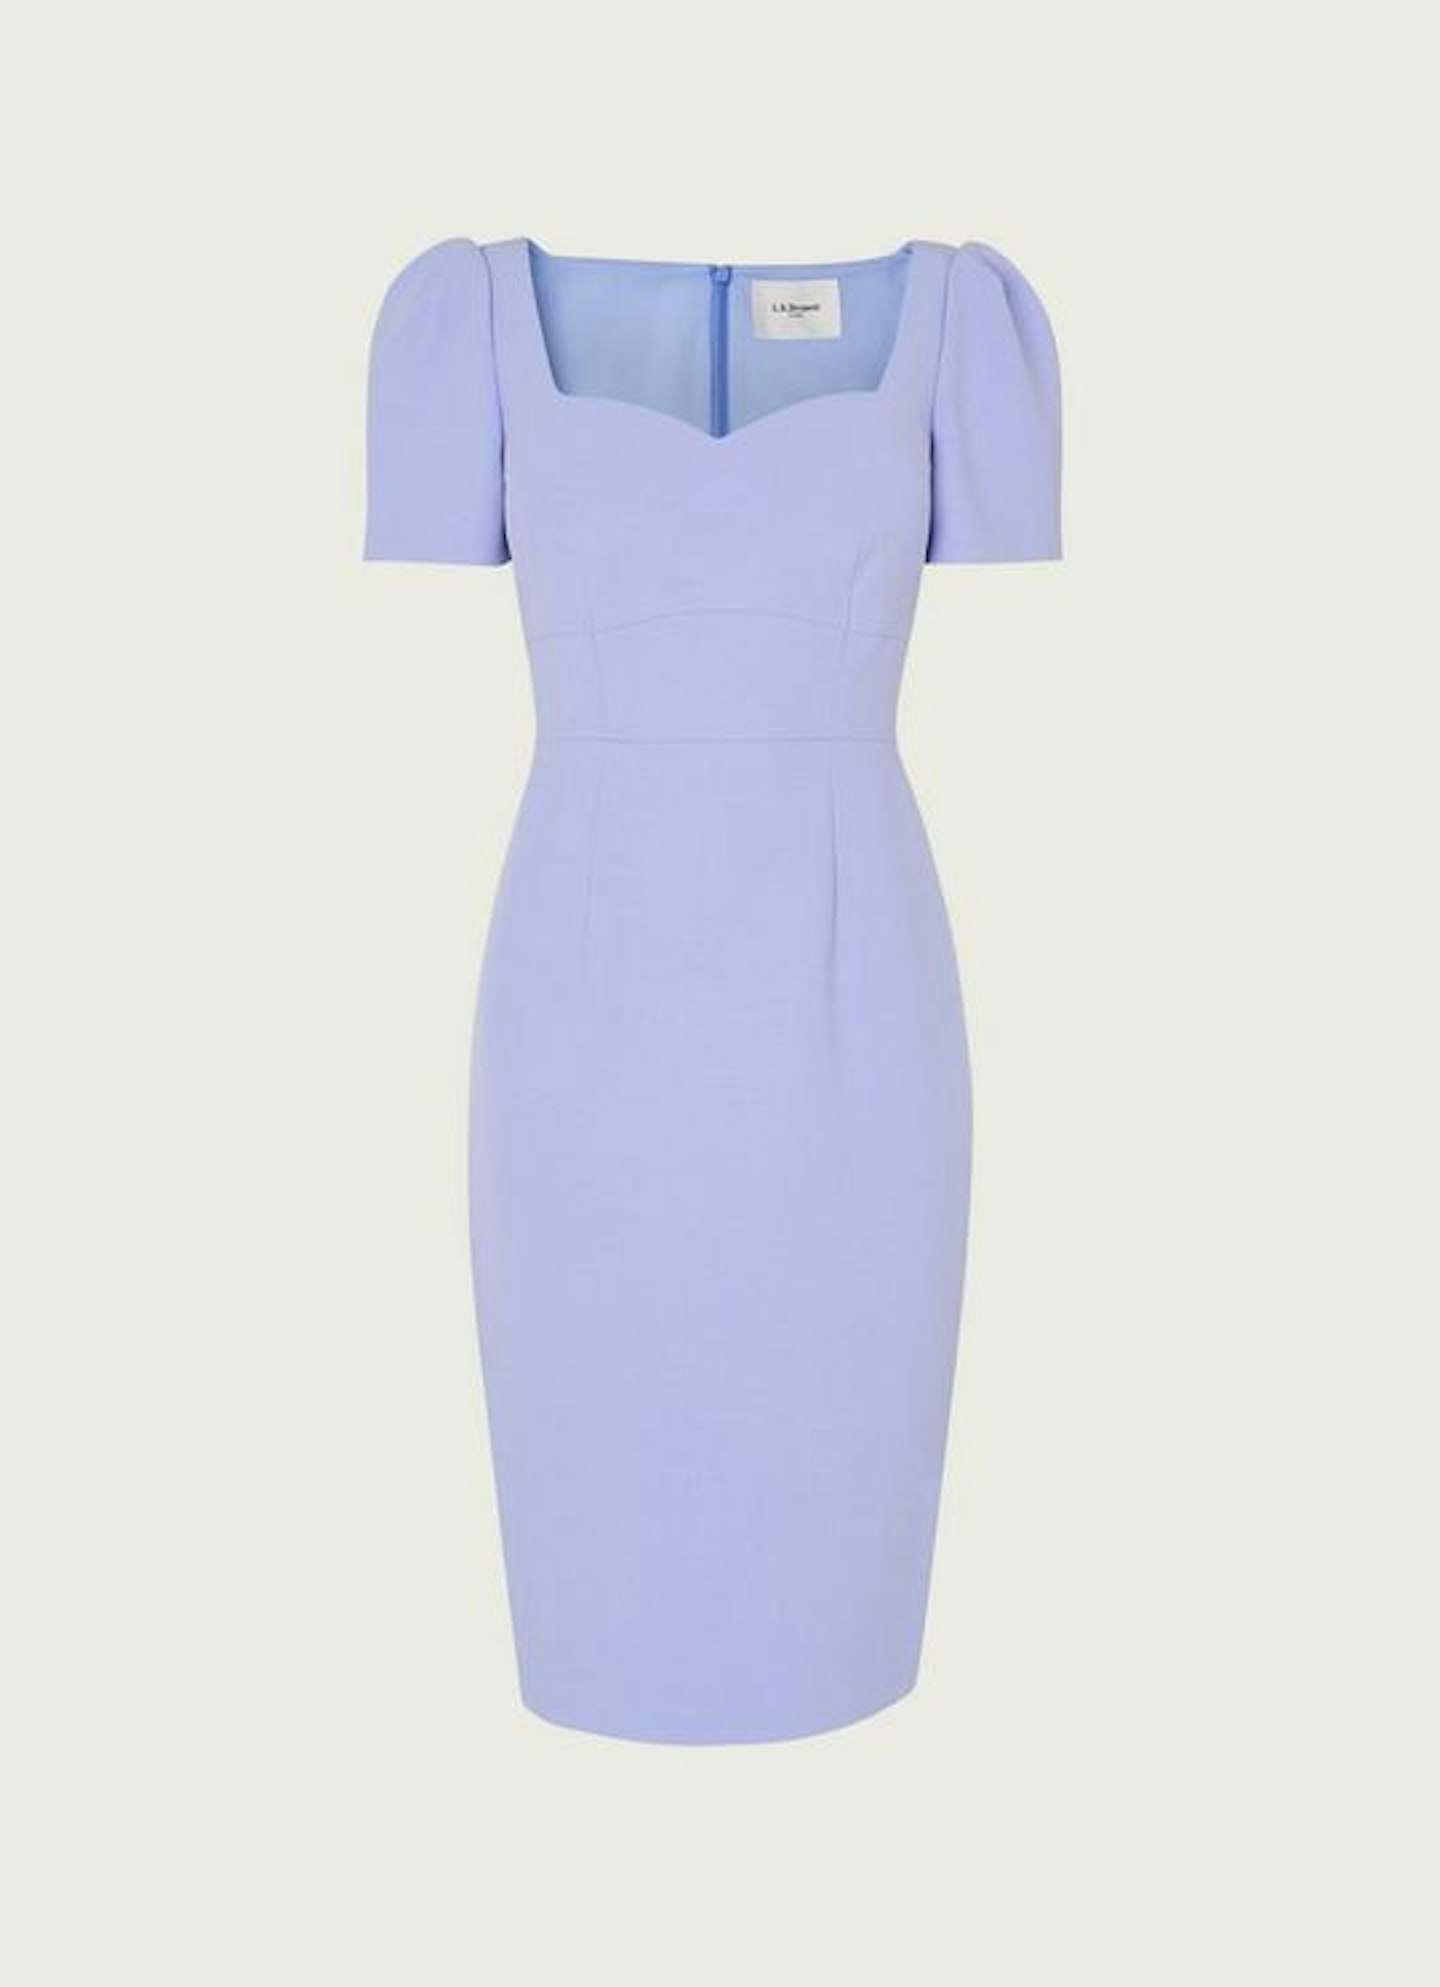 LK Bennett, Pale Blue Shift Dress, £225